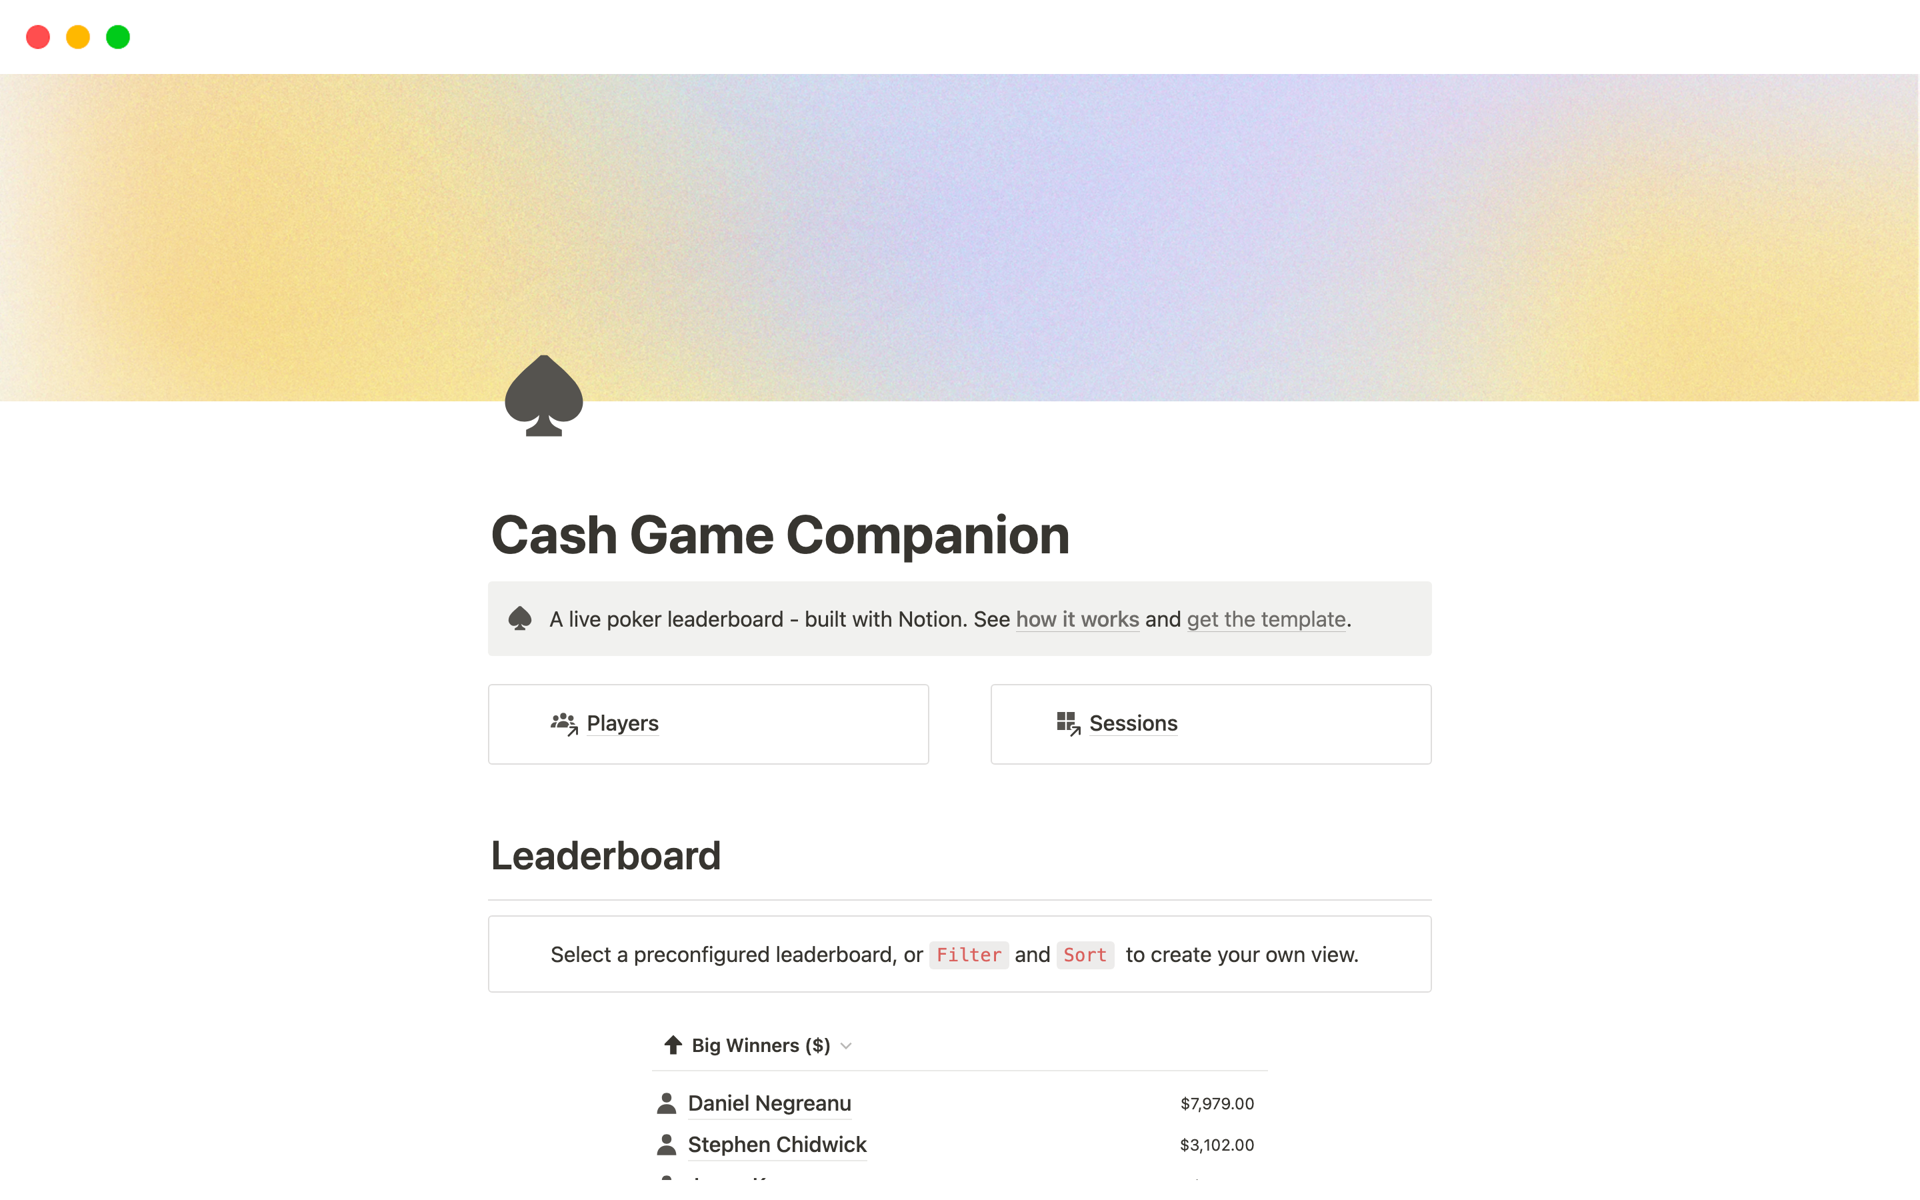 Aperçu du modèle de Cash Game Companion